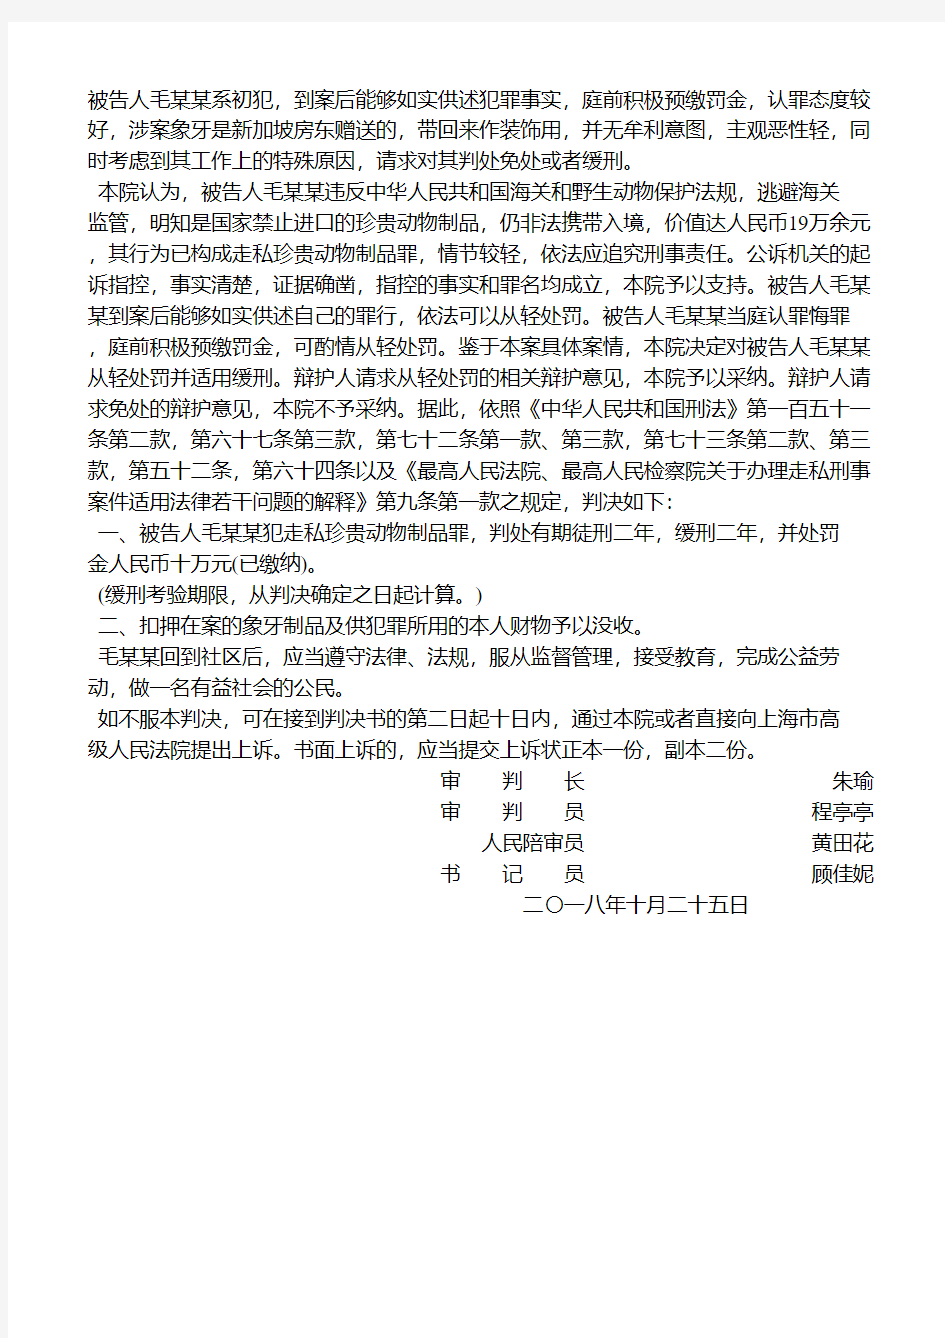 上海市第三中级人民法院刑事判决书